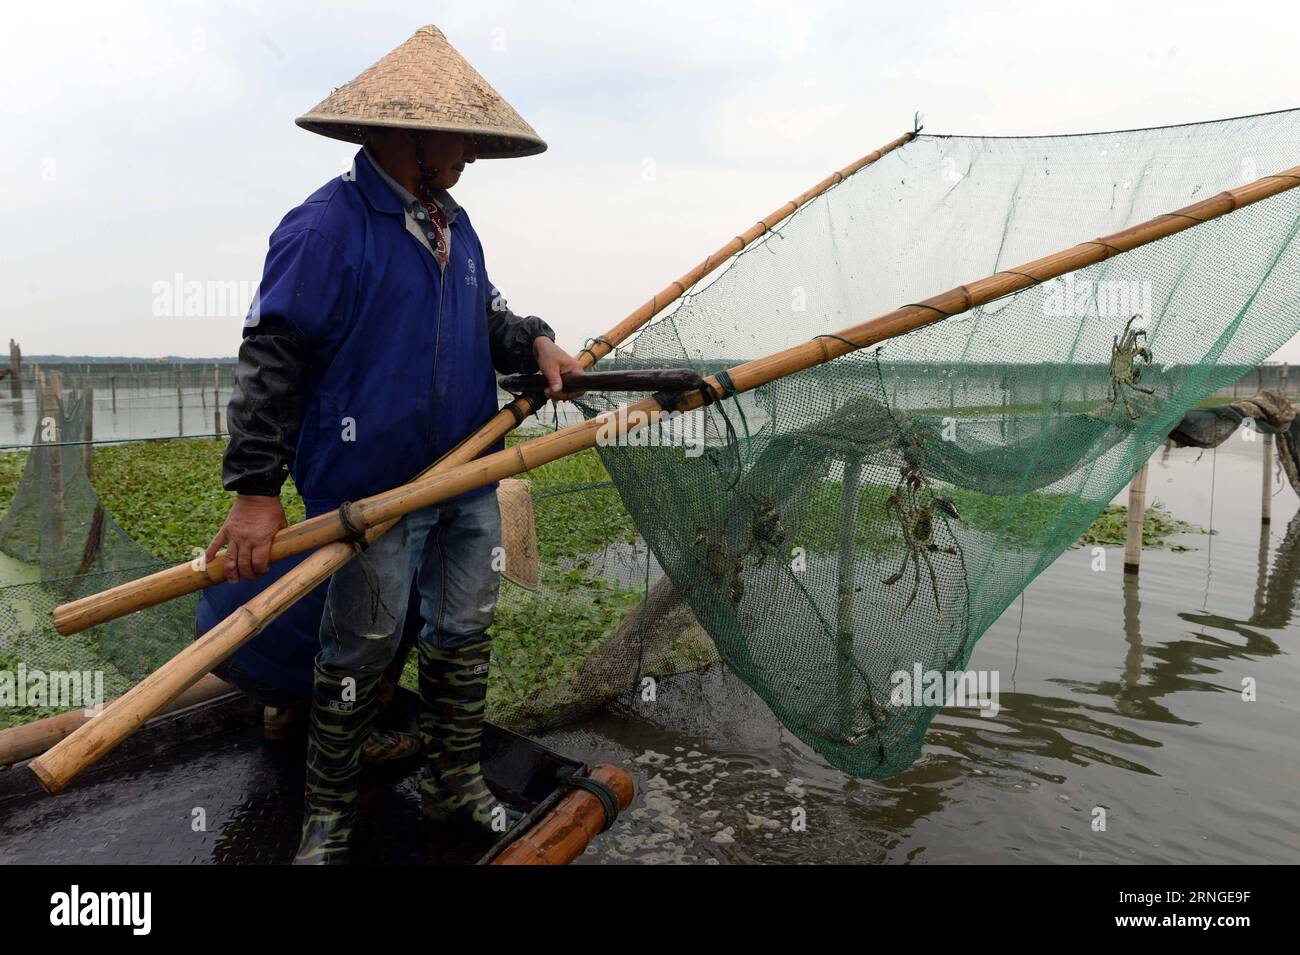 SUZHOU, le 23 septembre 2016 -- Un pêcheur récolte des crabes chinois à moufles sur le lac Yangcheng à Suzhou, dans la province de Jiangsu, dans l est de la Chine, le 23 septembre 2016. La saison de récolte 2016 pour le crabe moufle chinois (Eriocheir sinensis) dans le lac Yangcheng, une importante région productrice, a débuté vendredi. Aussi connu sous le nom de grand crabe d'écluse, les crabes chinois à moufles sont appréciés par de nombreux amateurs de gourmets. (wx) CHINA-JIANGSU-YANGCHENG LAKE-CHINESE MITTEN CRABE-MOISSON (CN) JixChunpeng PUBLICATIONxNOTxINxCHN Suzhou septembre 23 2016 un pêcheur récolte des crabes moyens chinois SUR le lac Yang Cheng à Suzhou East China S Jiangsu P Banque D'Images